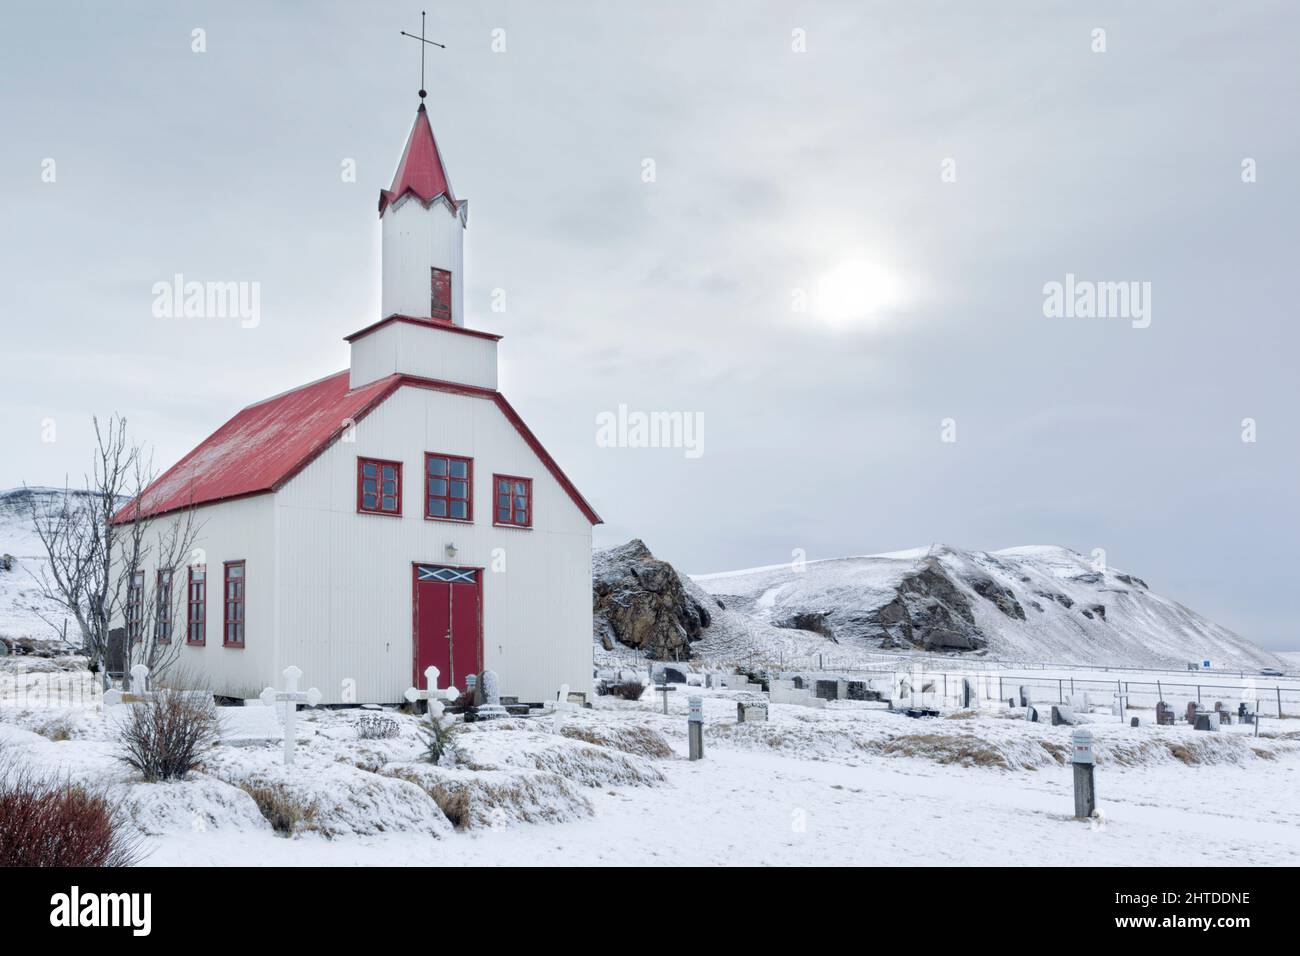 Église islandaise rurale entourée de neige à Skeiðflatarkirkja dans la région de Mýrdalshreppur sur la rive sud de l'Islande Banque D'Images